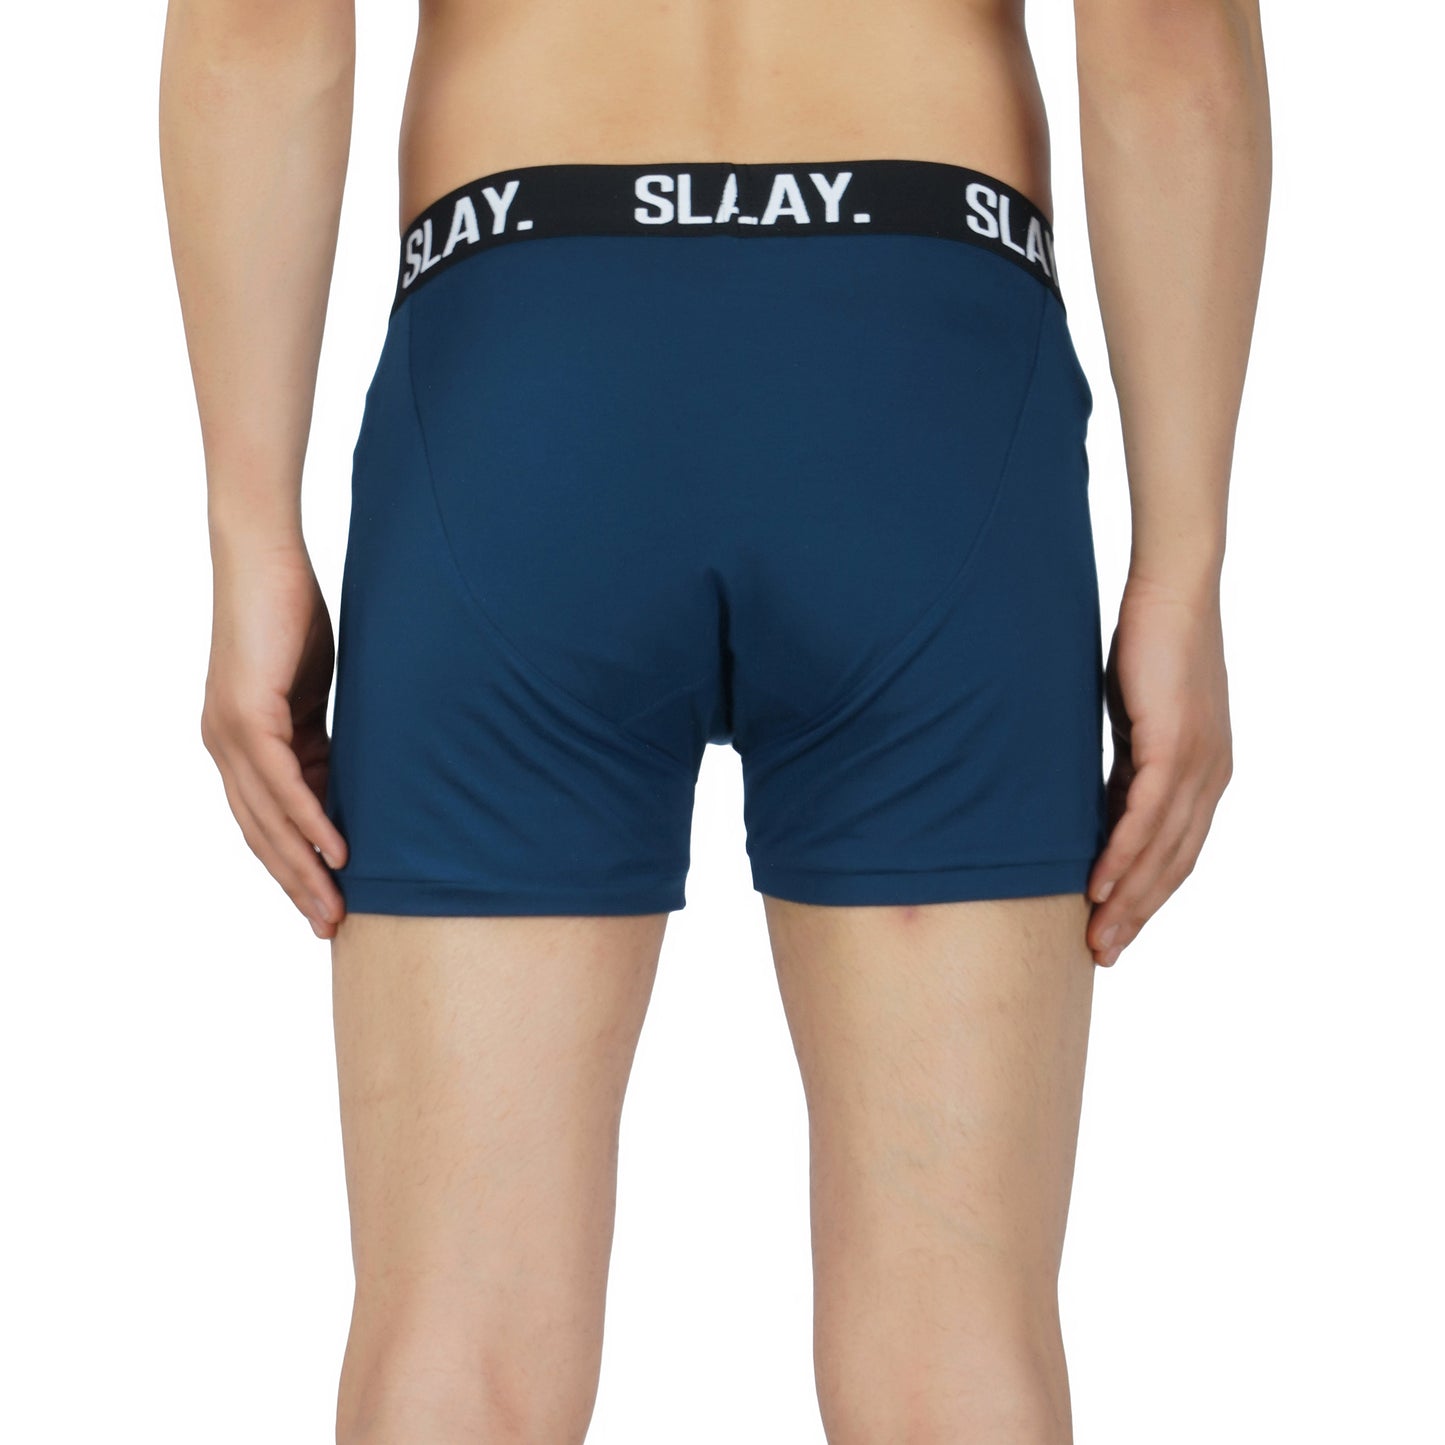 SLAY. Men's Blue Underwear Trunks